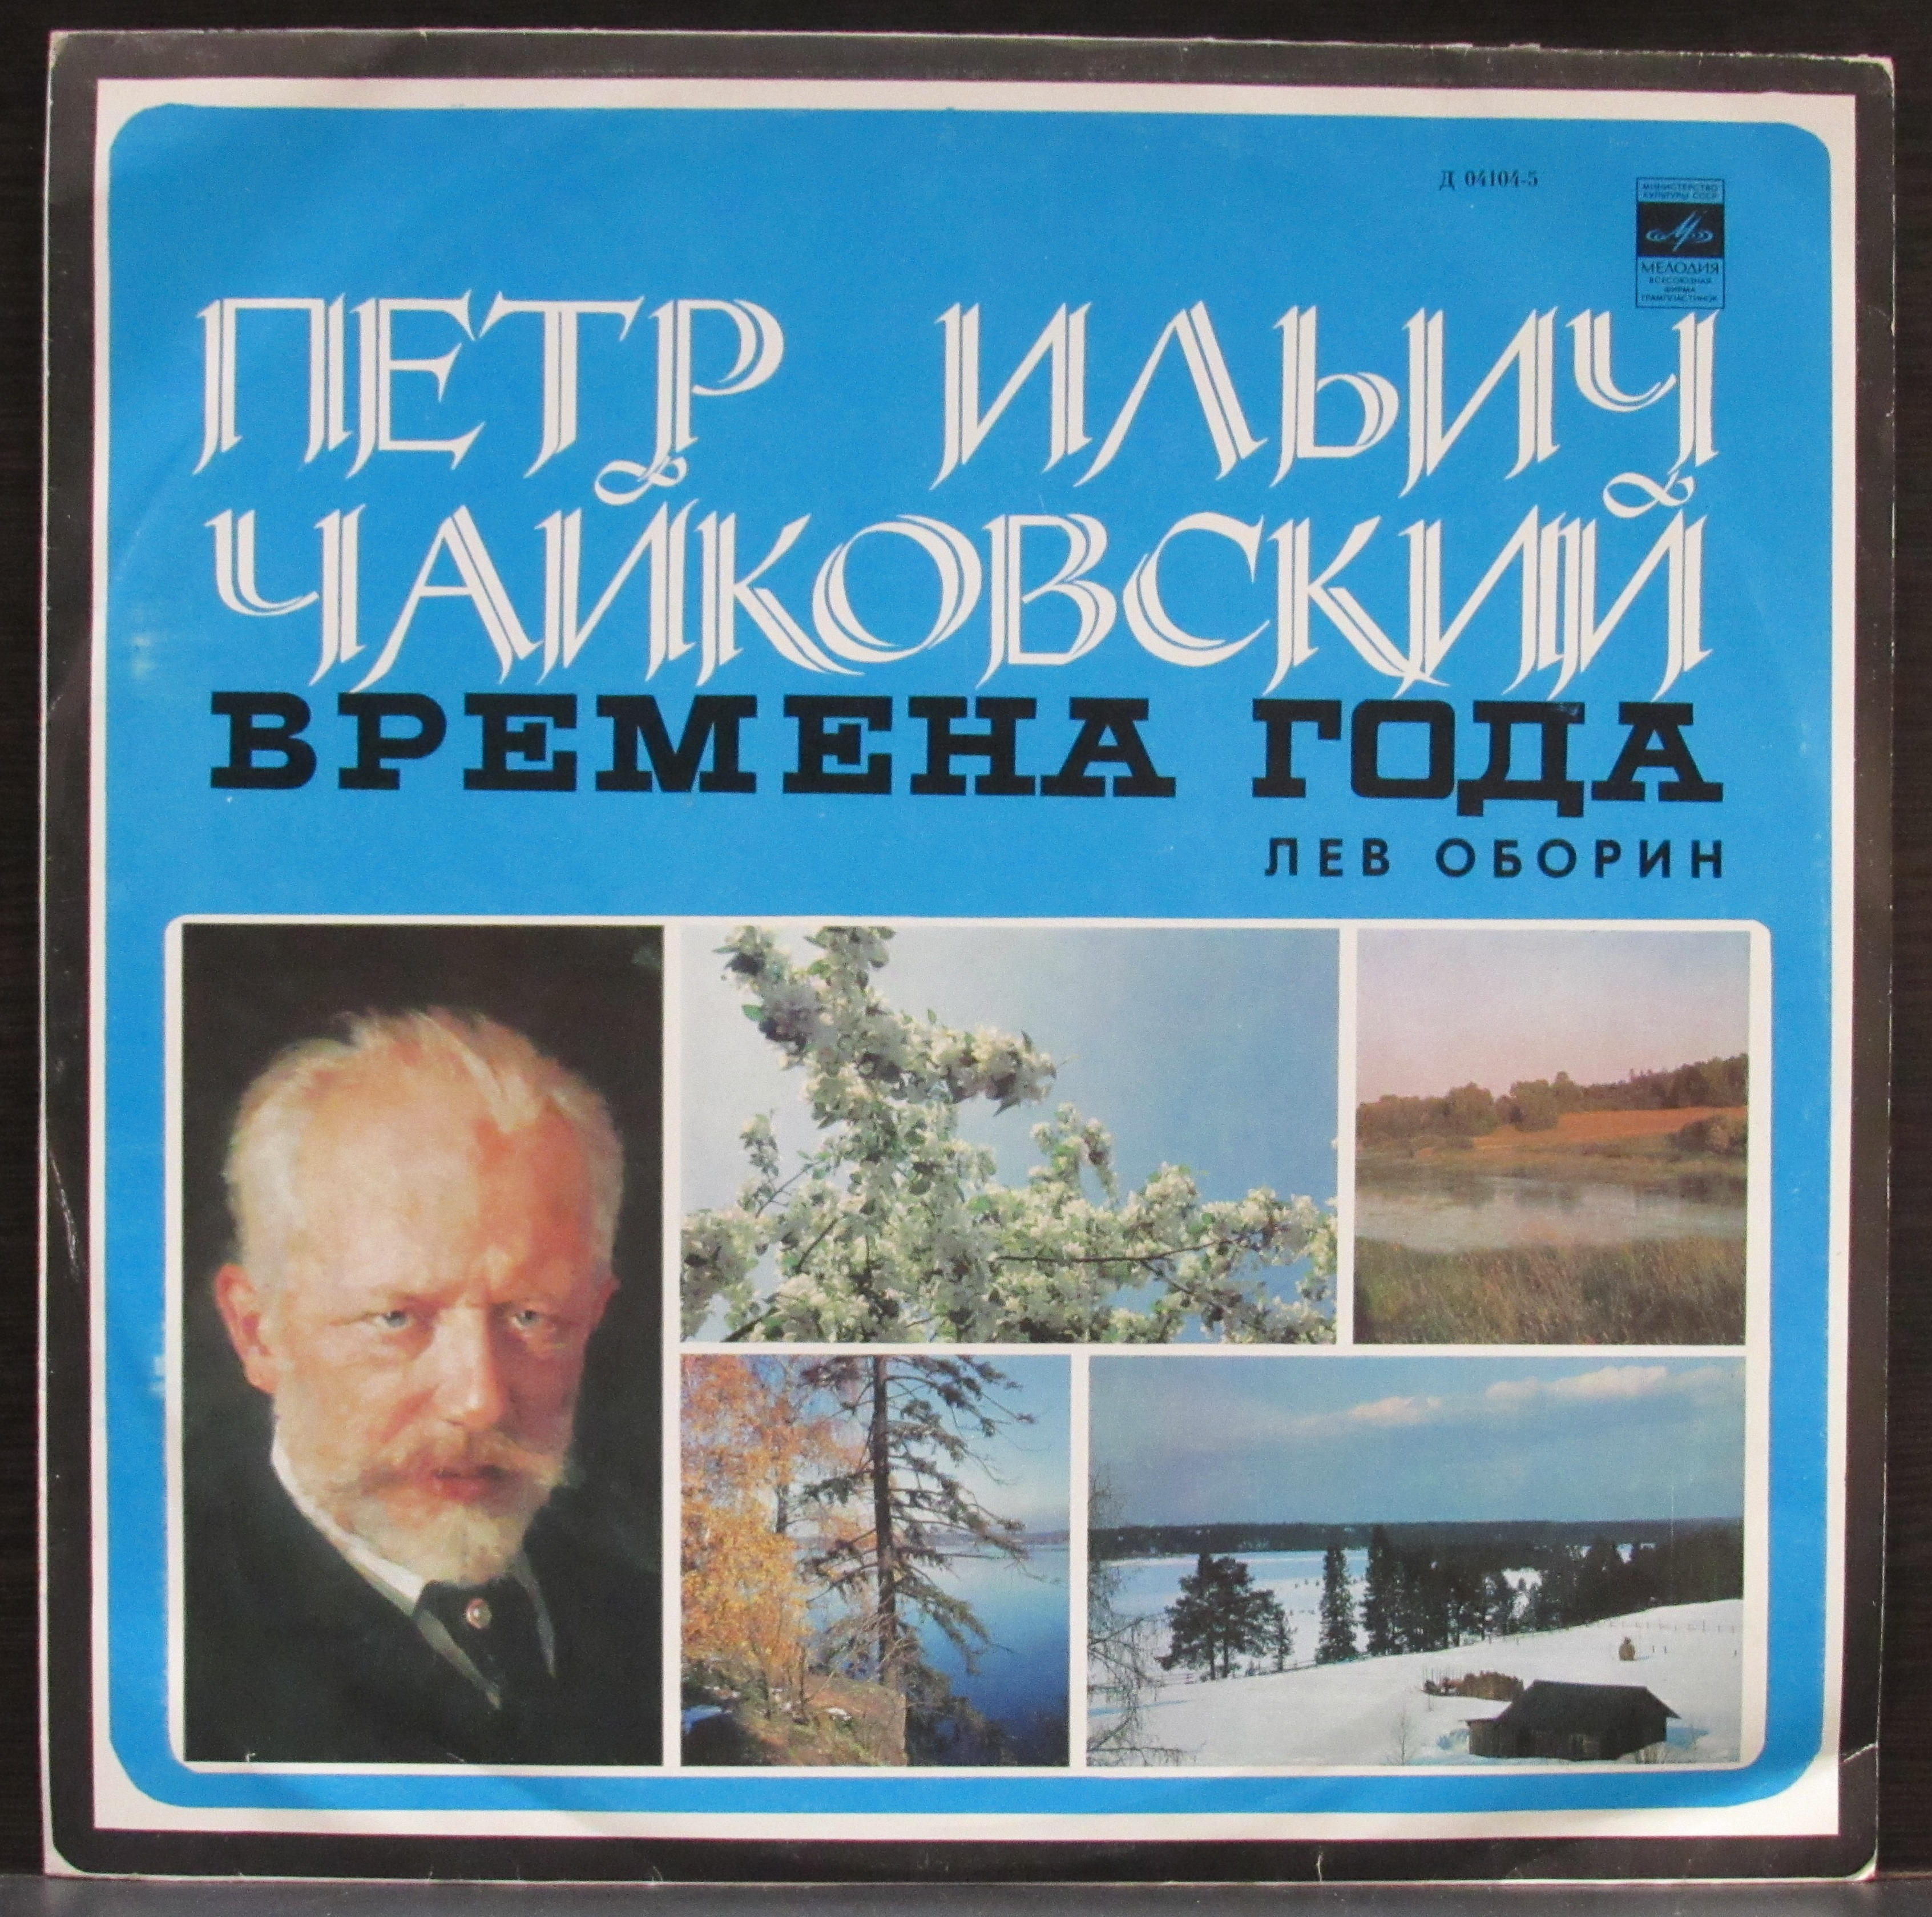 Музыка чайковского времена года слушать